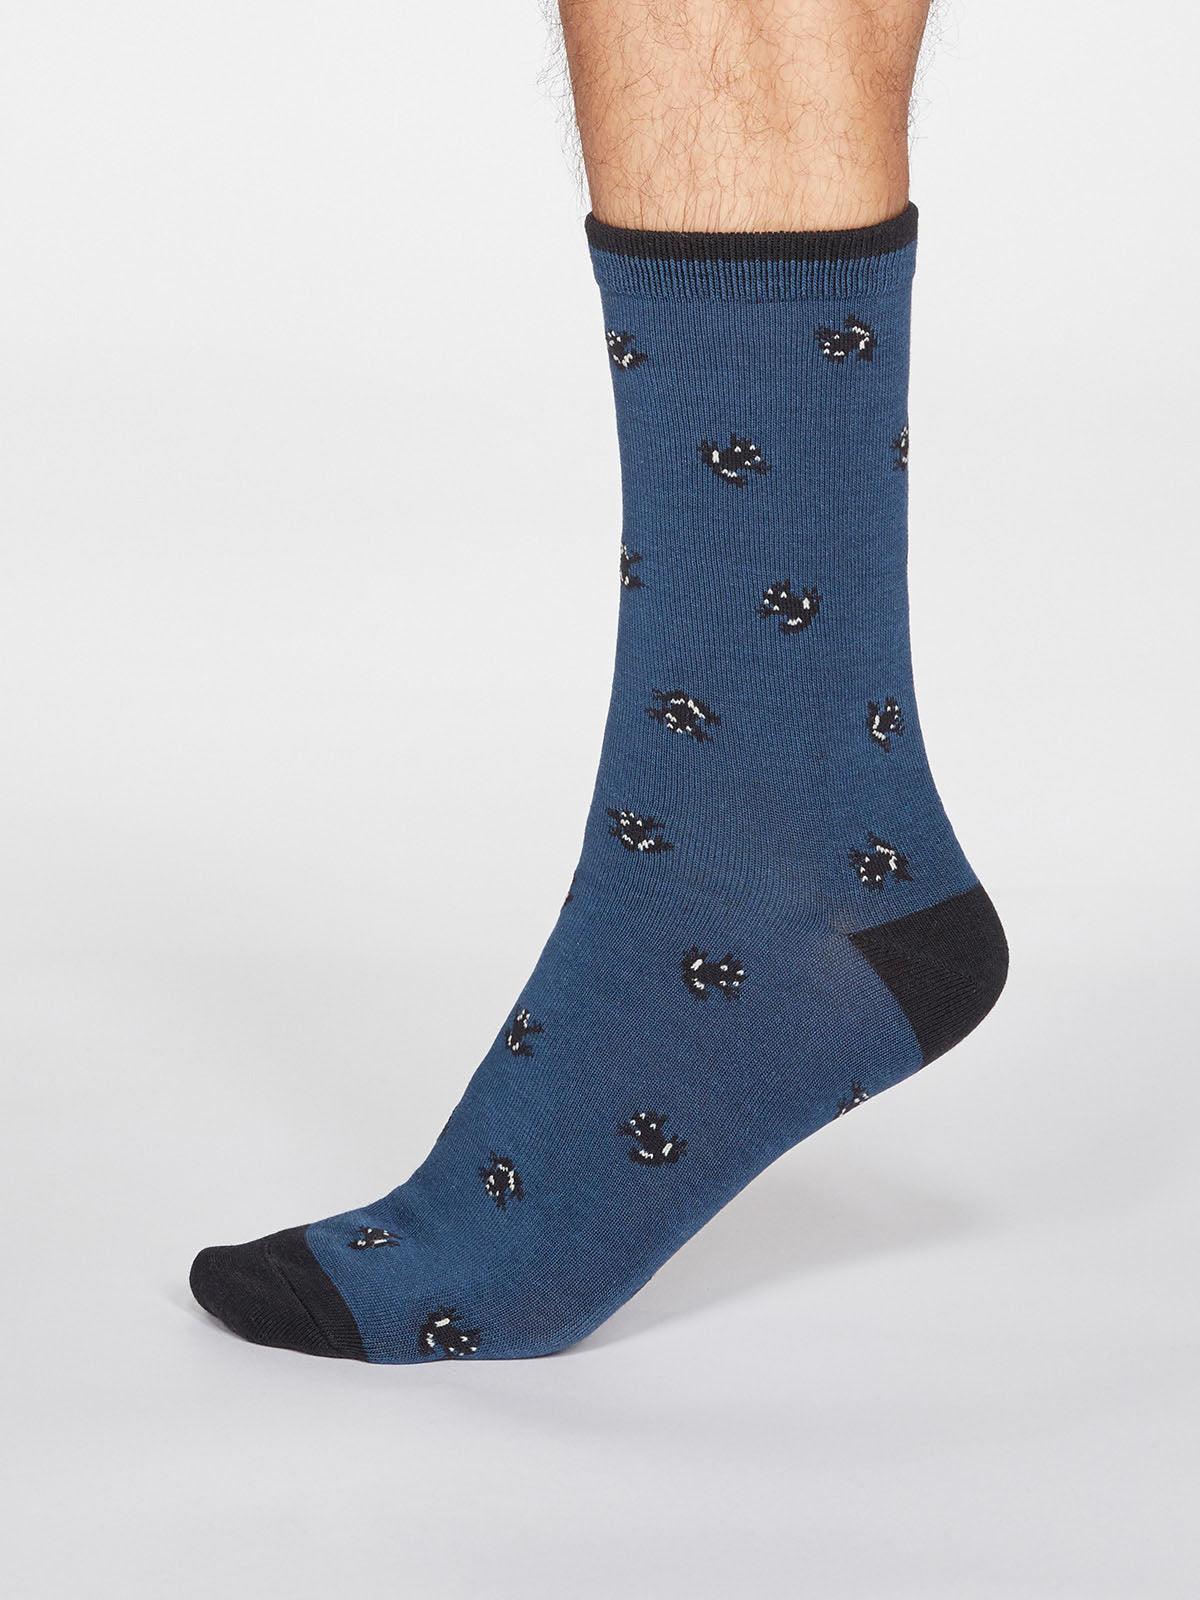 Wesley Frog Socks - Denim Blue - Thought Clothing UK